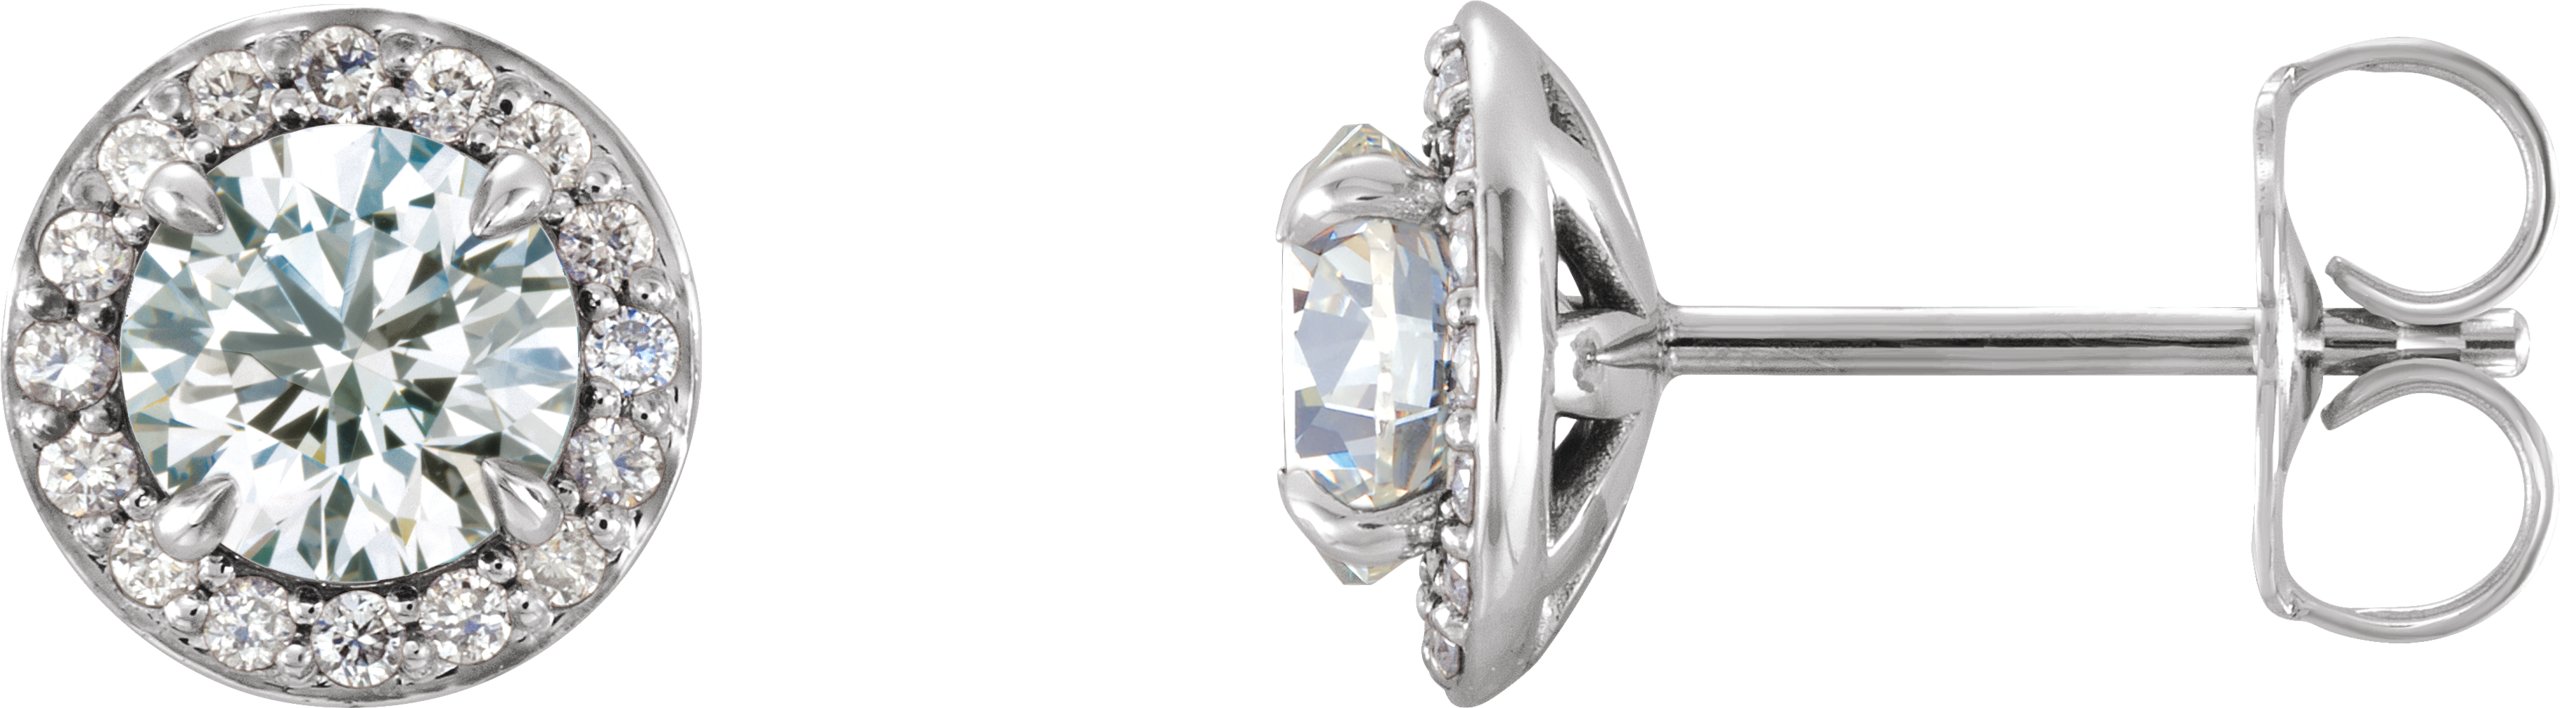 14K White 5 mm Round Forever One Moissanite and .125 CTW Diamond Earrings Ref. 13791103